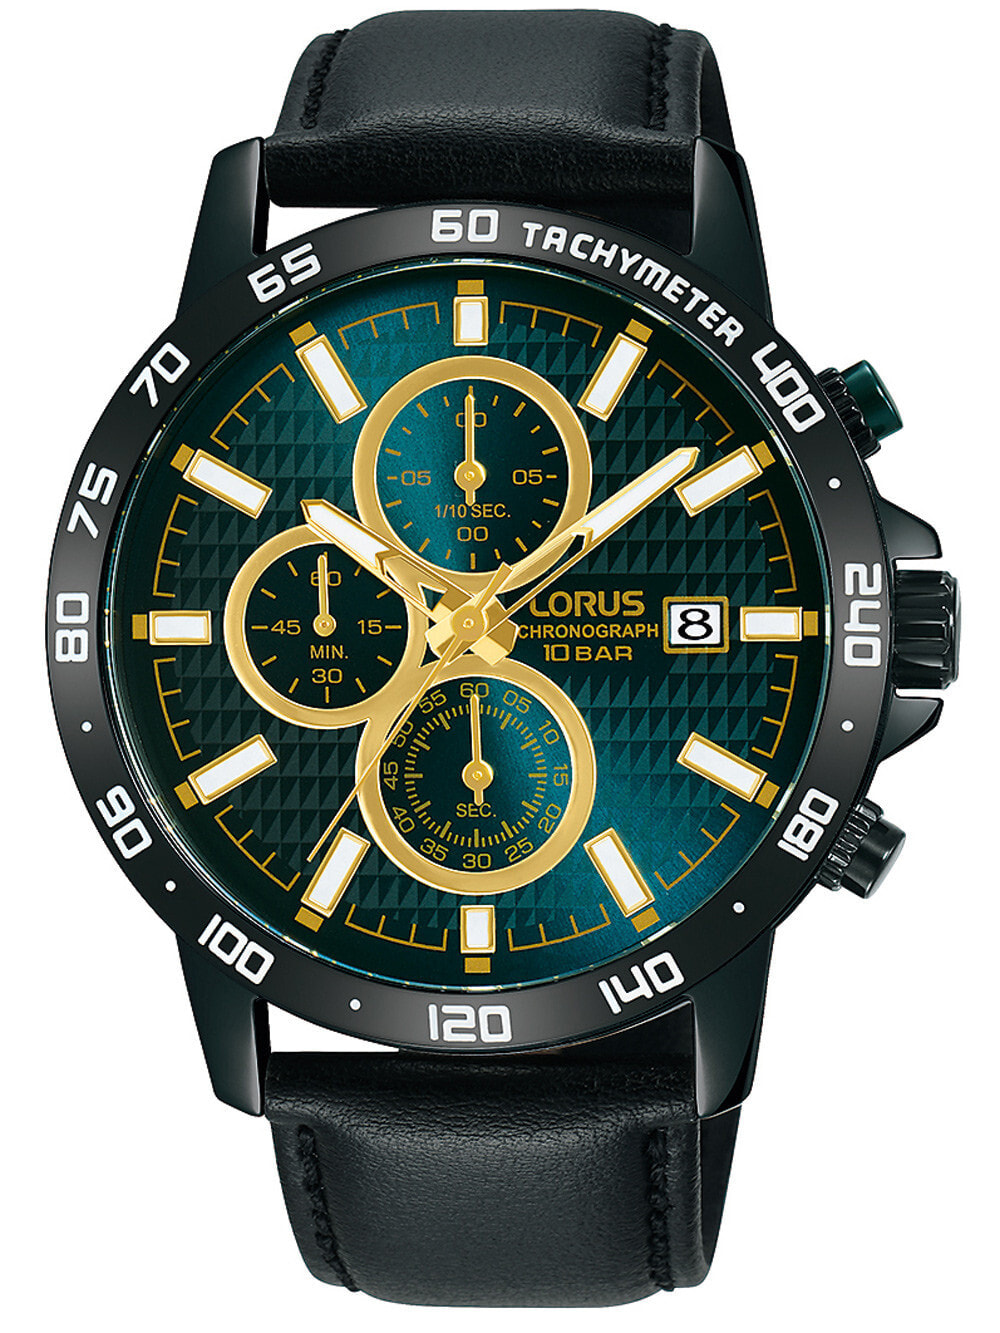 Мужские наручные часы с черным кожаным ремешком Lorus RM319GX9 classic chronograph 43mm 10ATM